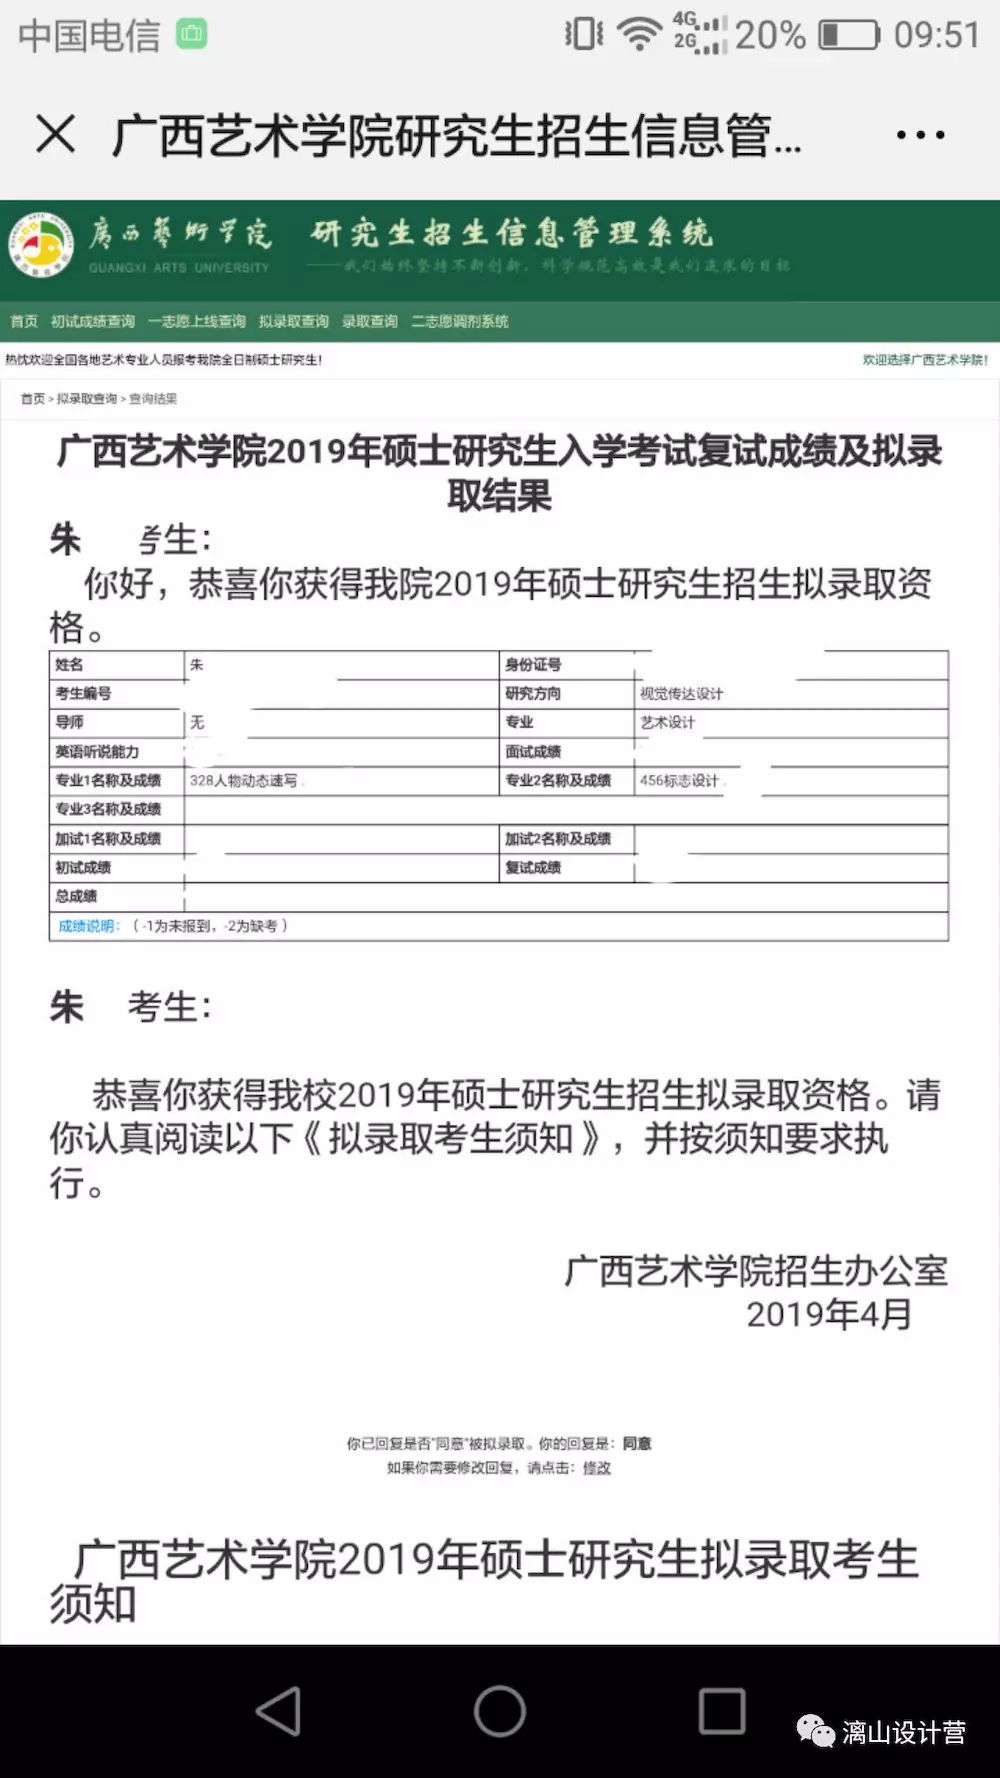 广西漓山教育喜报 2019考研复试再创佳绩 拟录取名单一片红